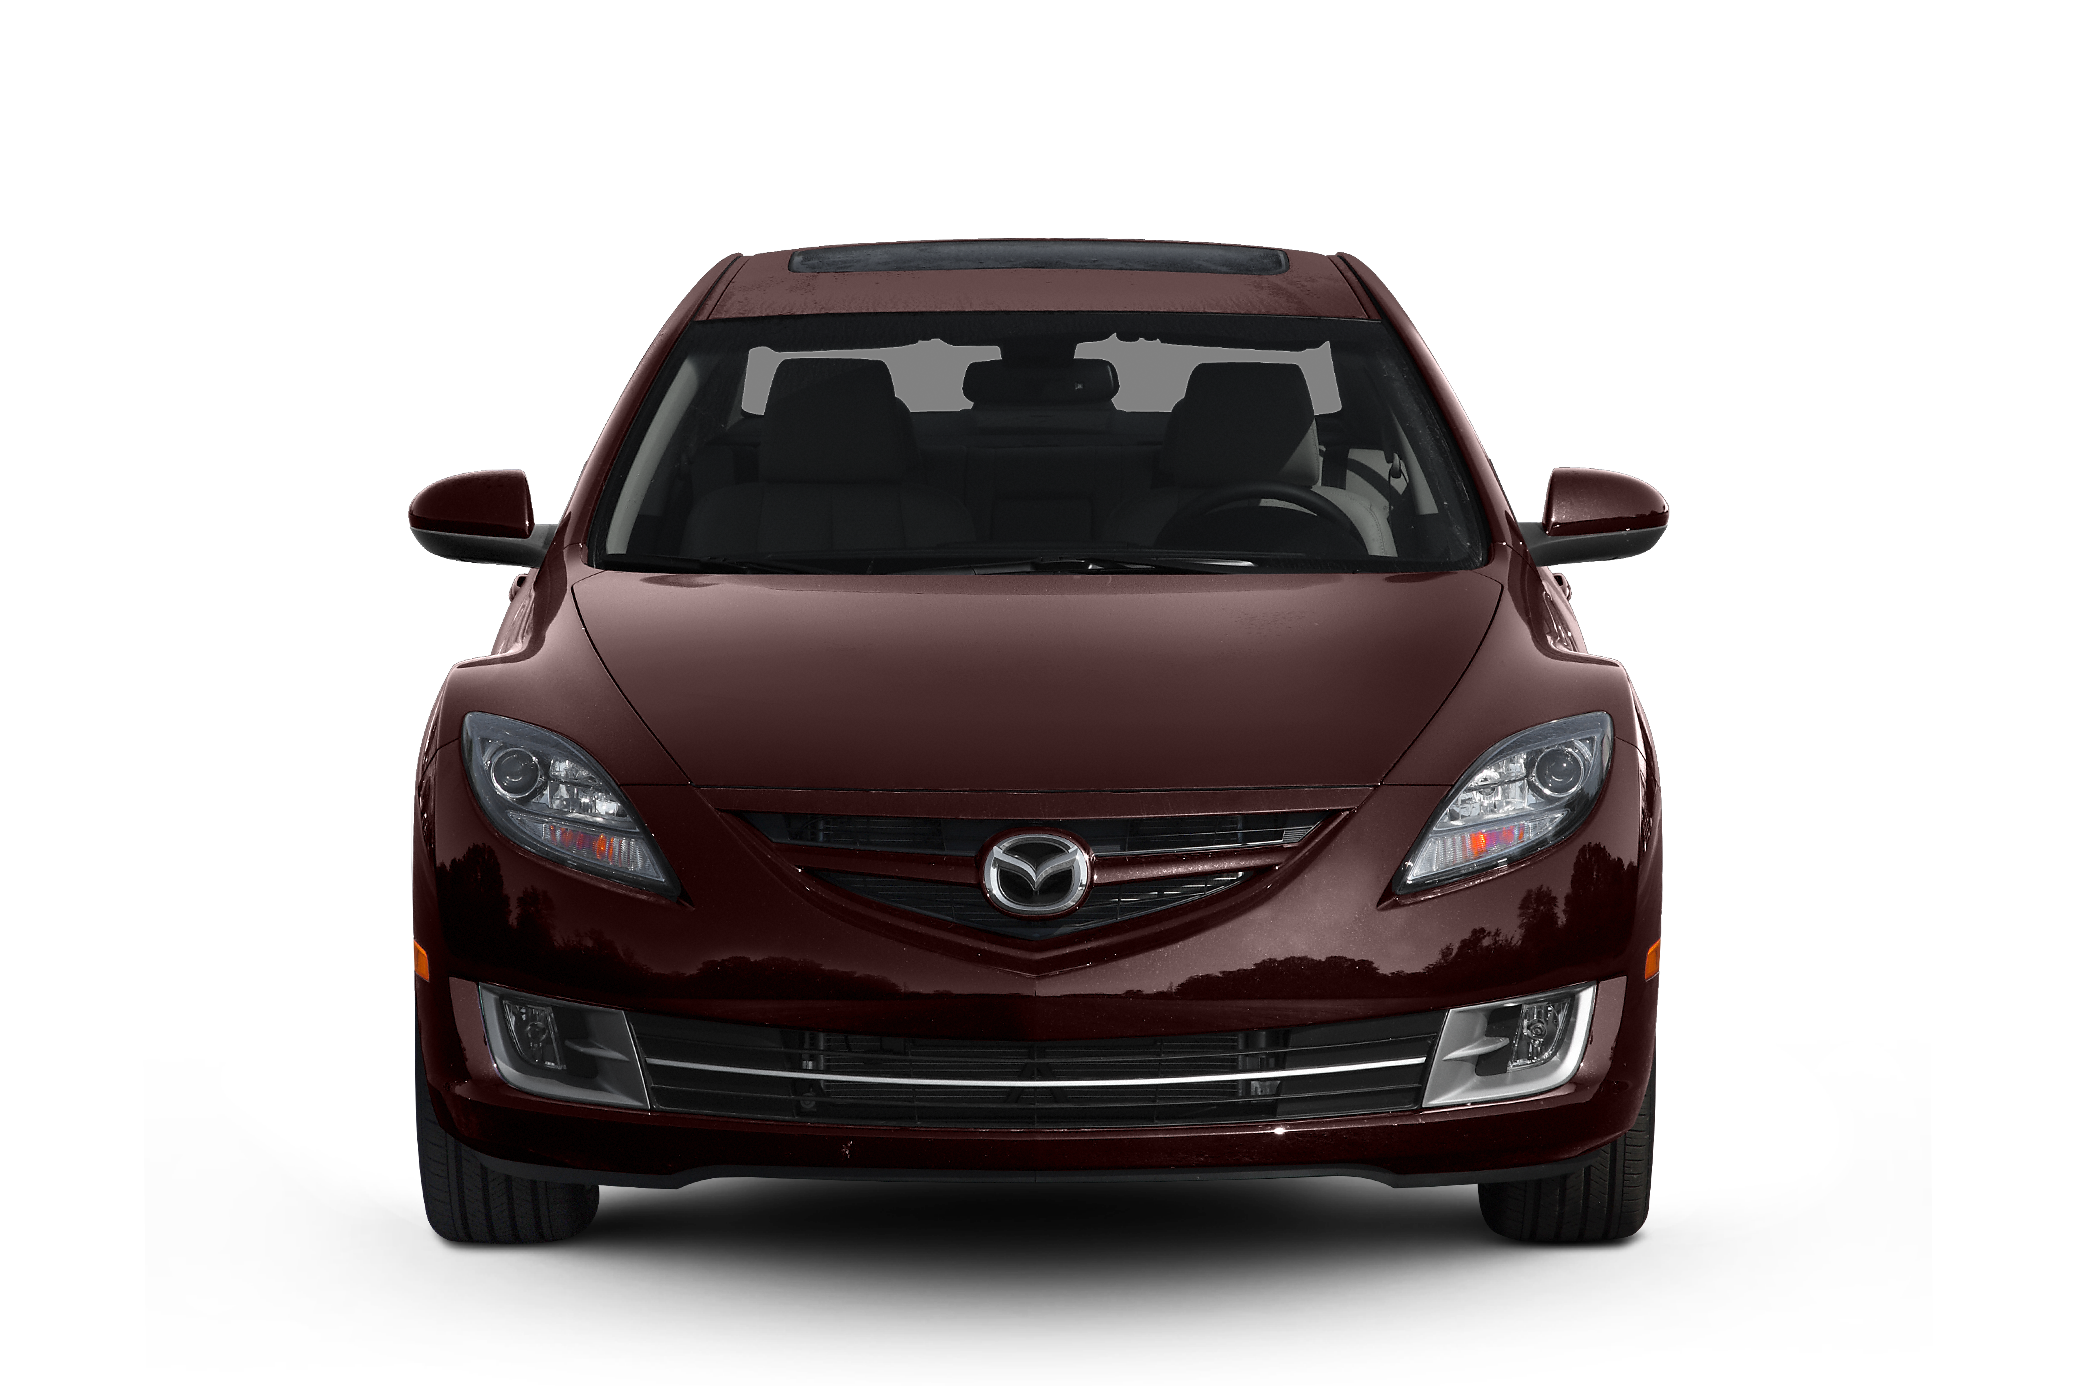 2011 Mazda Mazda6